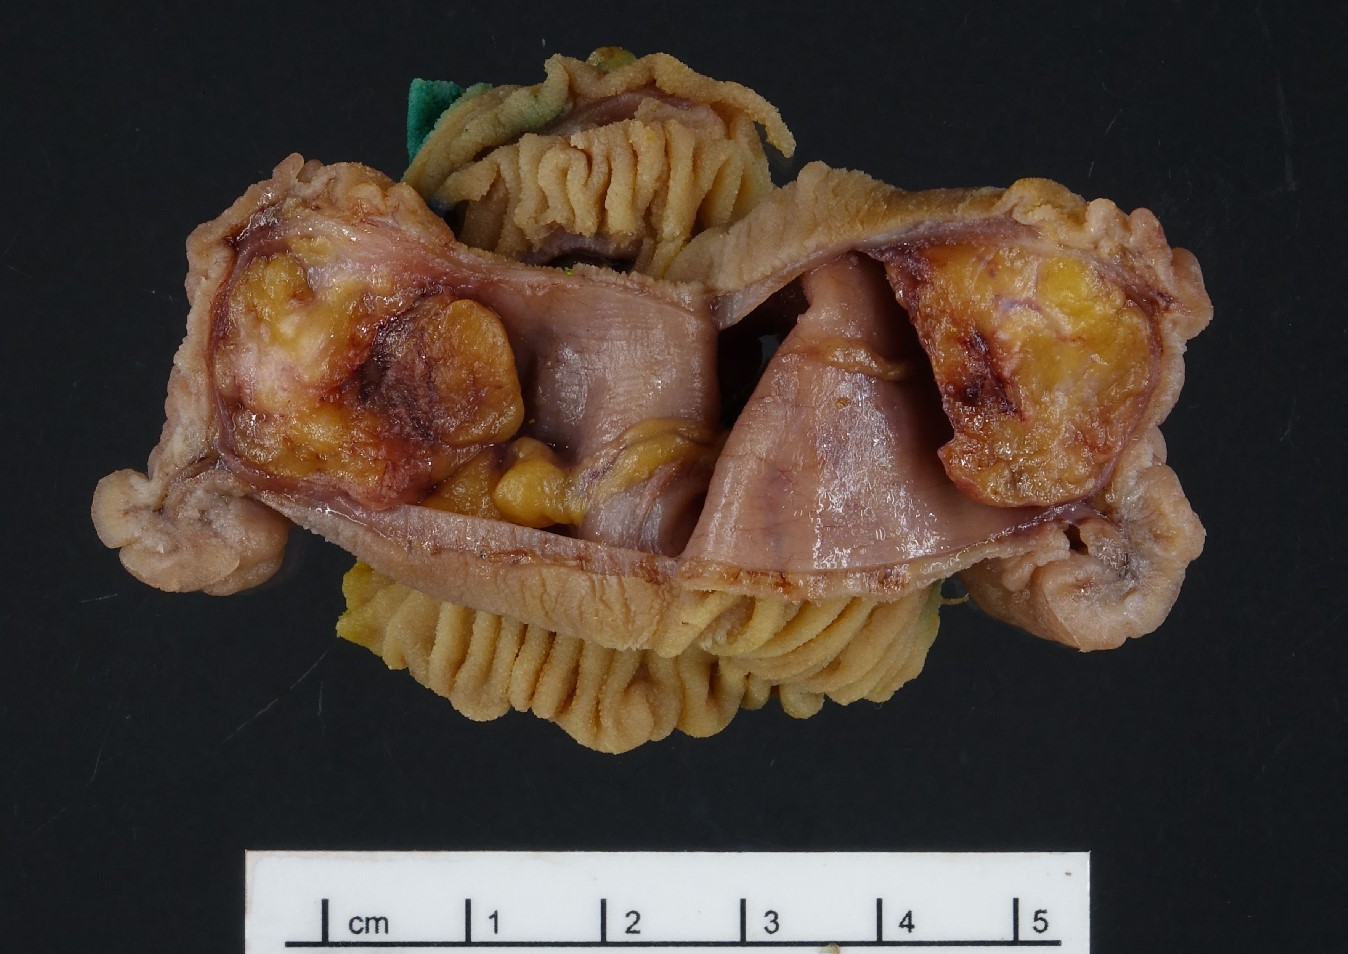 Heterotopic pancreas in Meckel Diverticulum